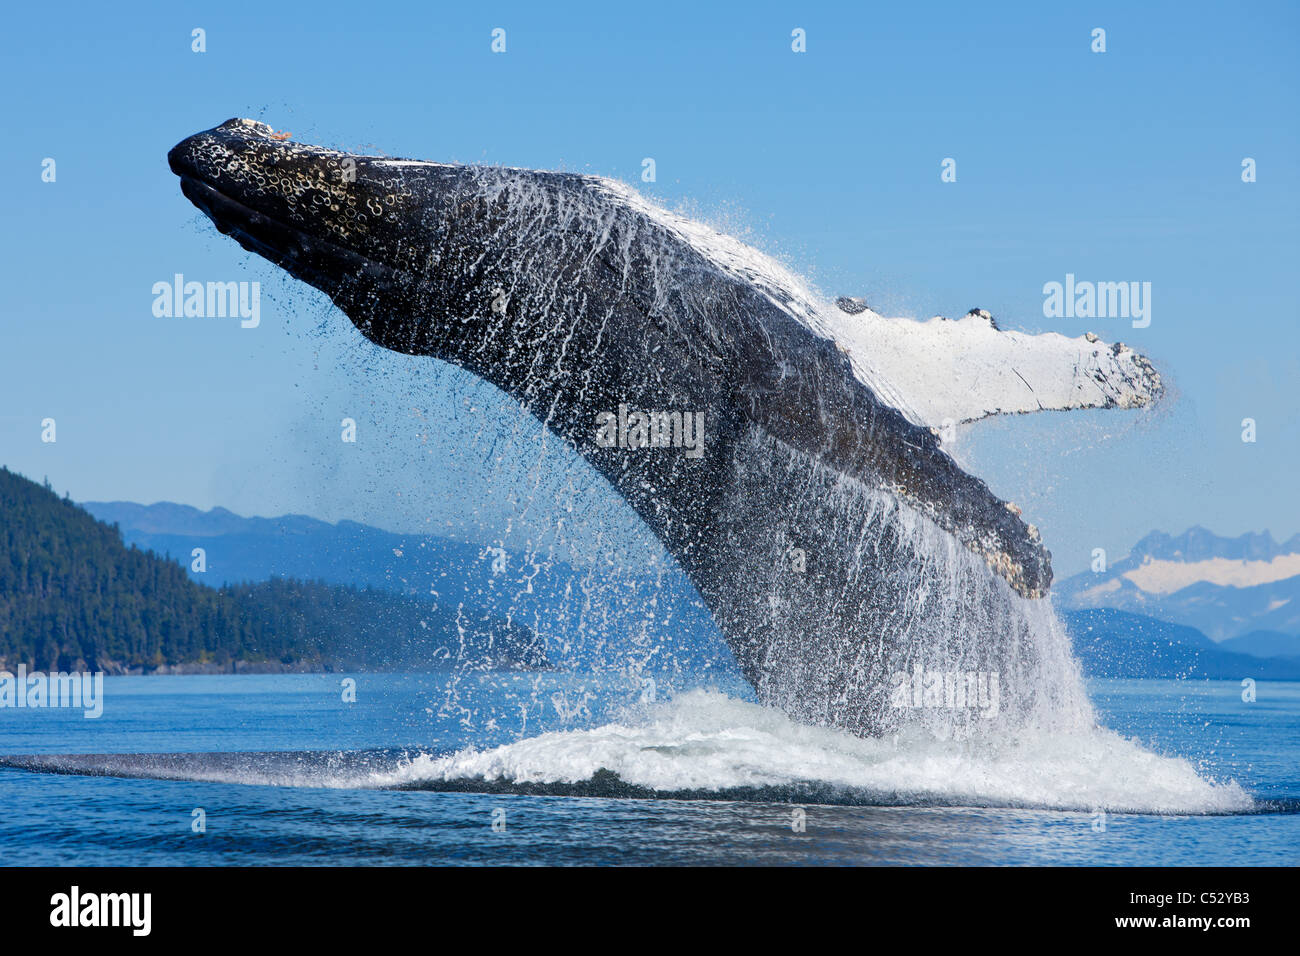 Una ballena jorobada violaciones a lo largo de la costa de la isla Chichagof, dentro del pasaje, Admiralty Island, Alaska Foto de stock